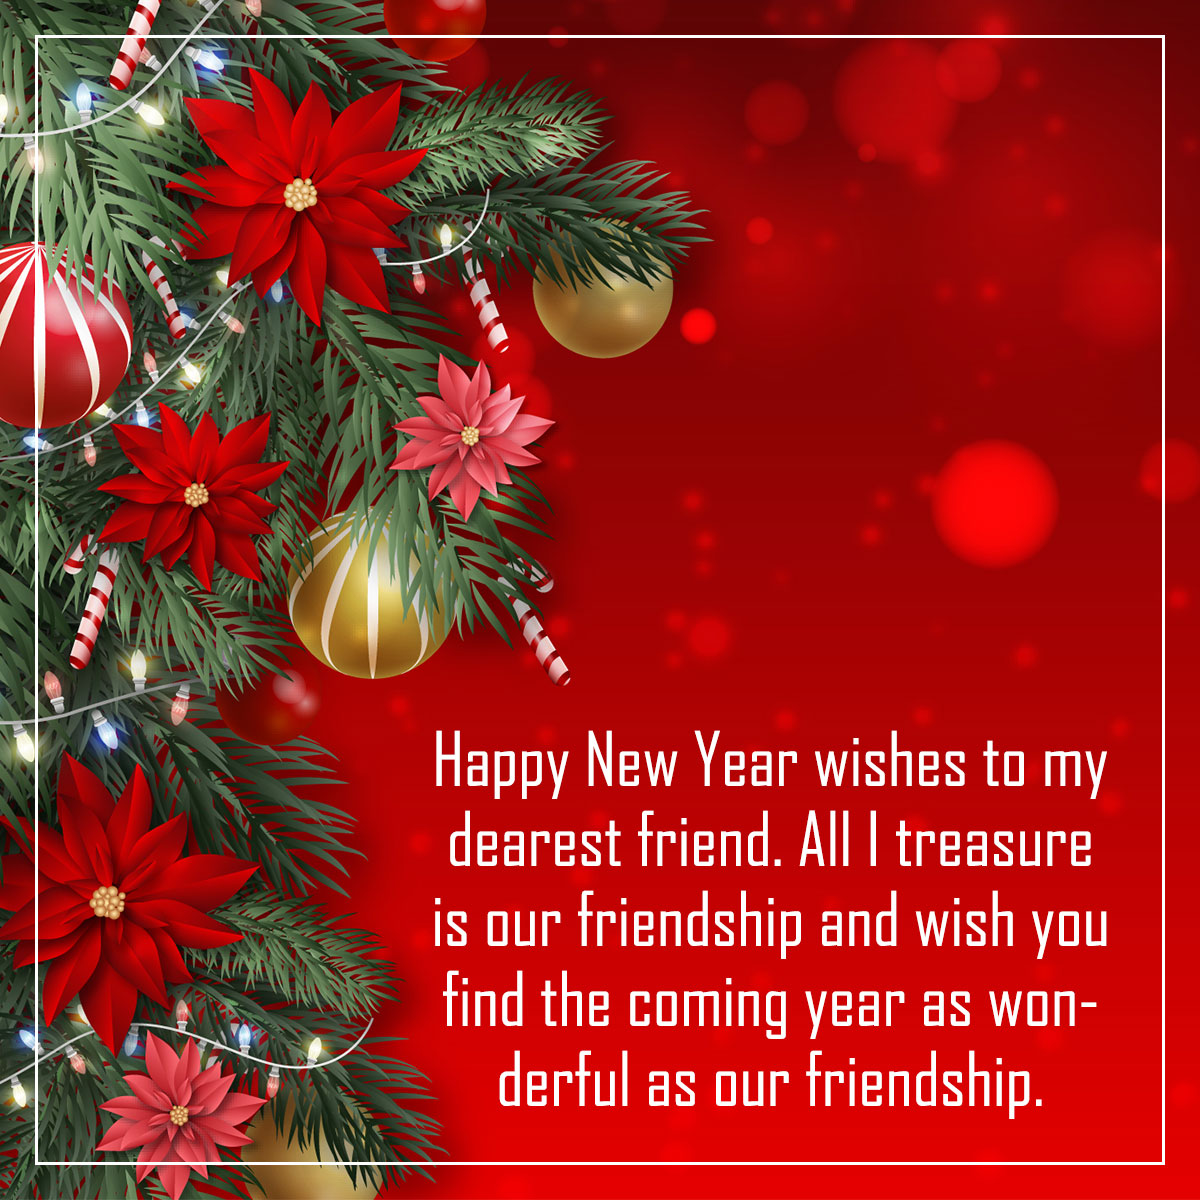 Красная картинка с текстом поздравления с новым годом на английском языке с цветами и елочными шарами.